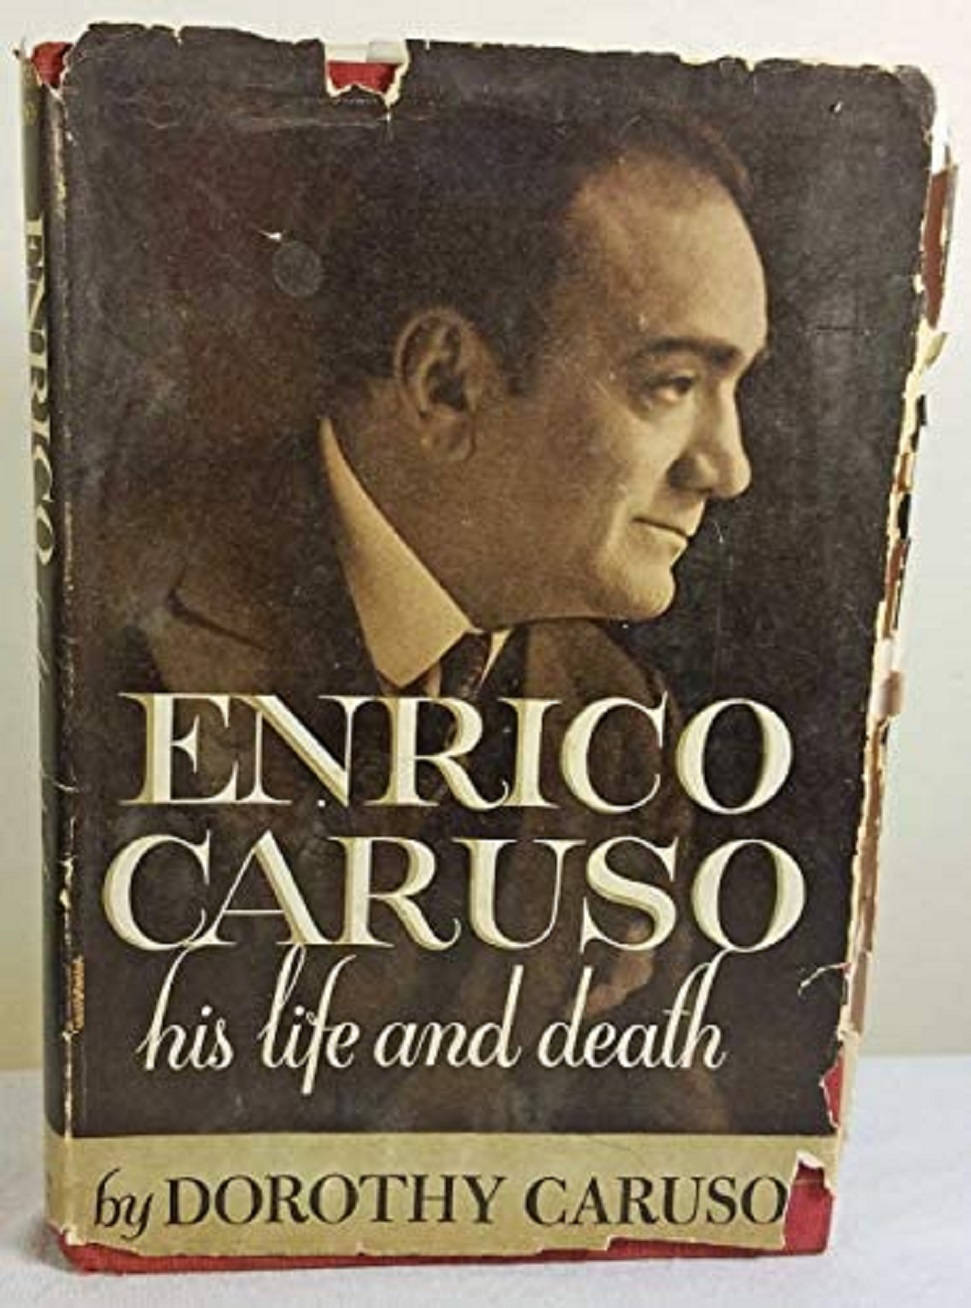 Italian Opera Singer Enrico Caruso Biography Book Cover Wallpaper